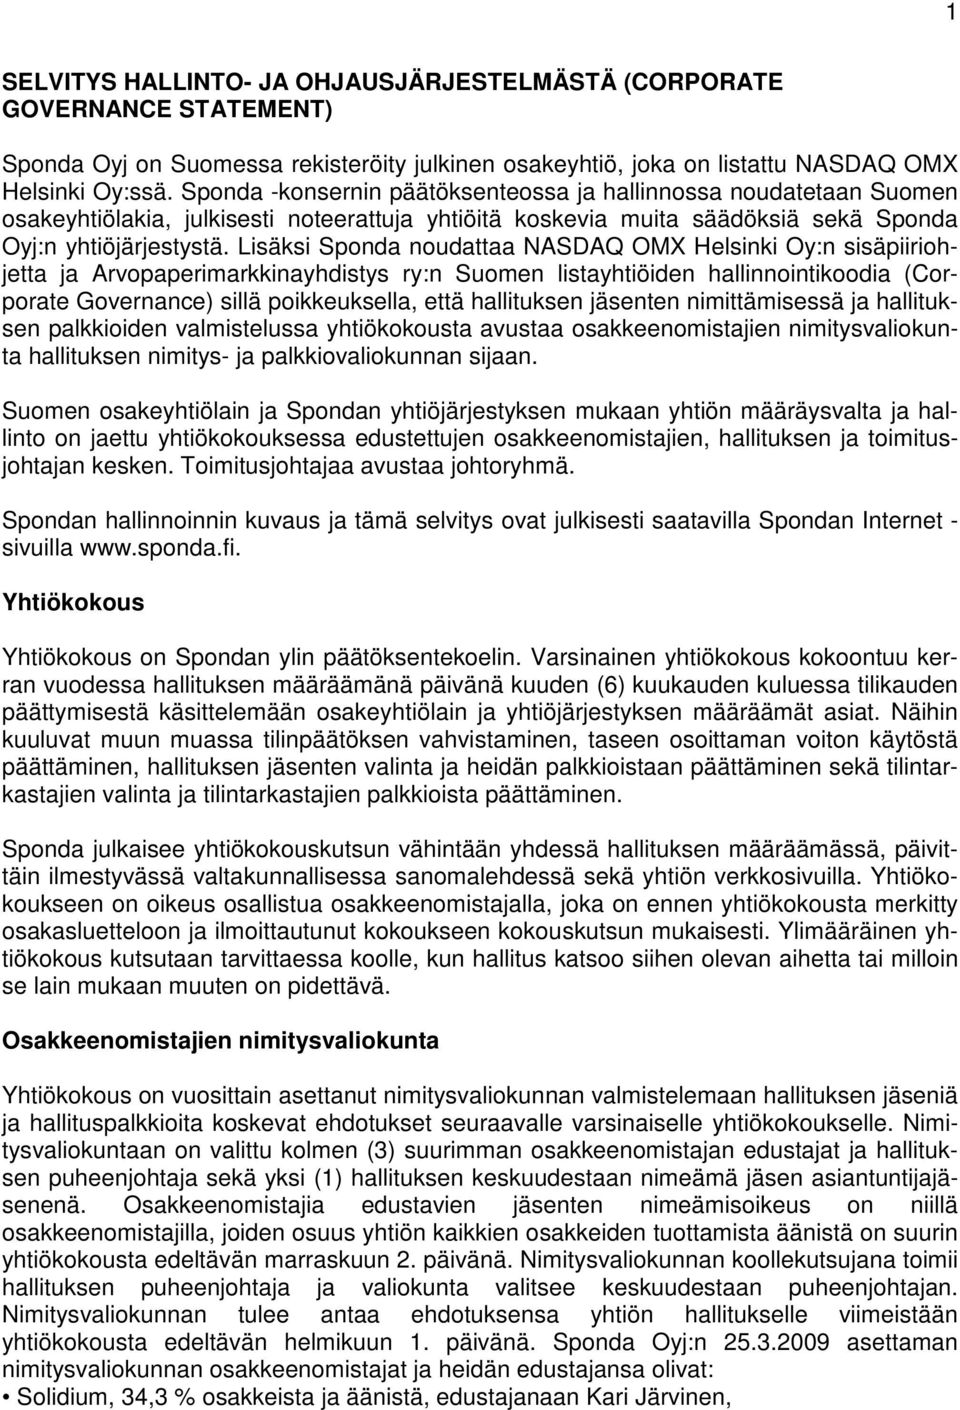 Lisäksi Sponda noudattaa NASDAQ OMX Helsinki Oy:n sisäpiiriohjetta ja Arvopaperimarkkinayhdistys ry:n Suomen listayhtiöiden hallinnointikoodia (Corporate Governance) sillä poikkeuksella, että